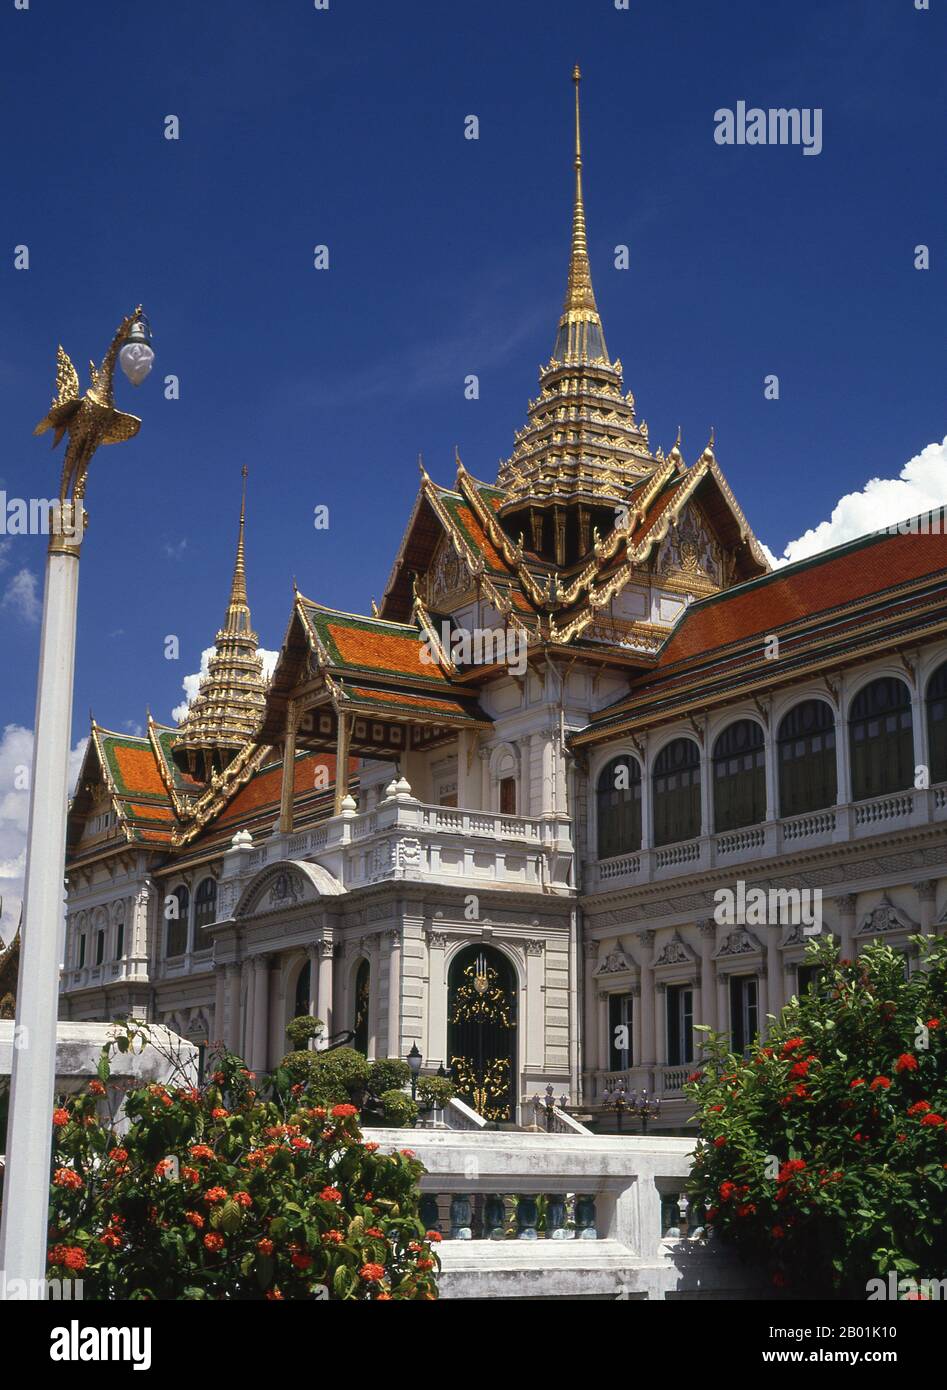 Thailand: Chakri Mahaprasad Hall, Grand Palace, Bangkok. Der große Palast diente ab dem 18. Jahrhundert als offizielle Residenz der Könige von Thailand. Der Bau des Palastes begann 1782 während der Regierungszeit von König Rama I., als er die Hauptstadt über den Fluss von Thonburi nach Bangkok verlegte. Stockfoto